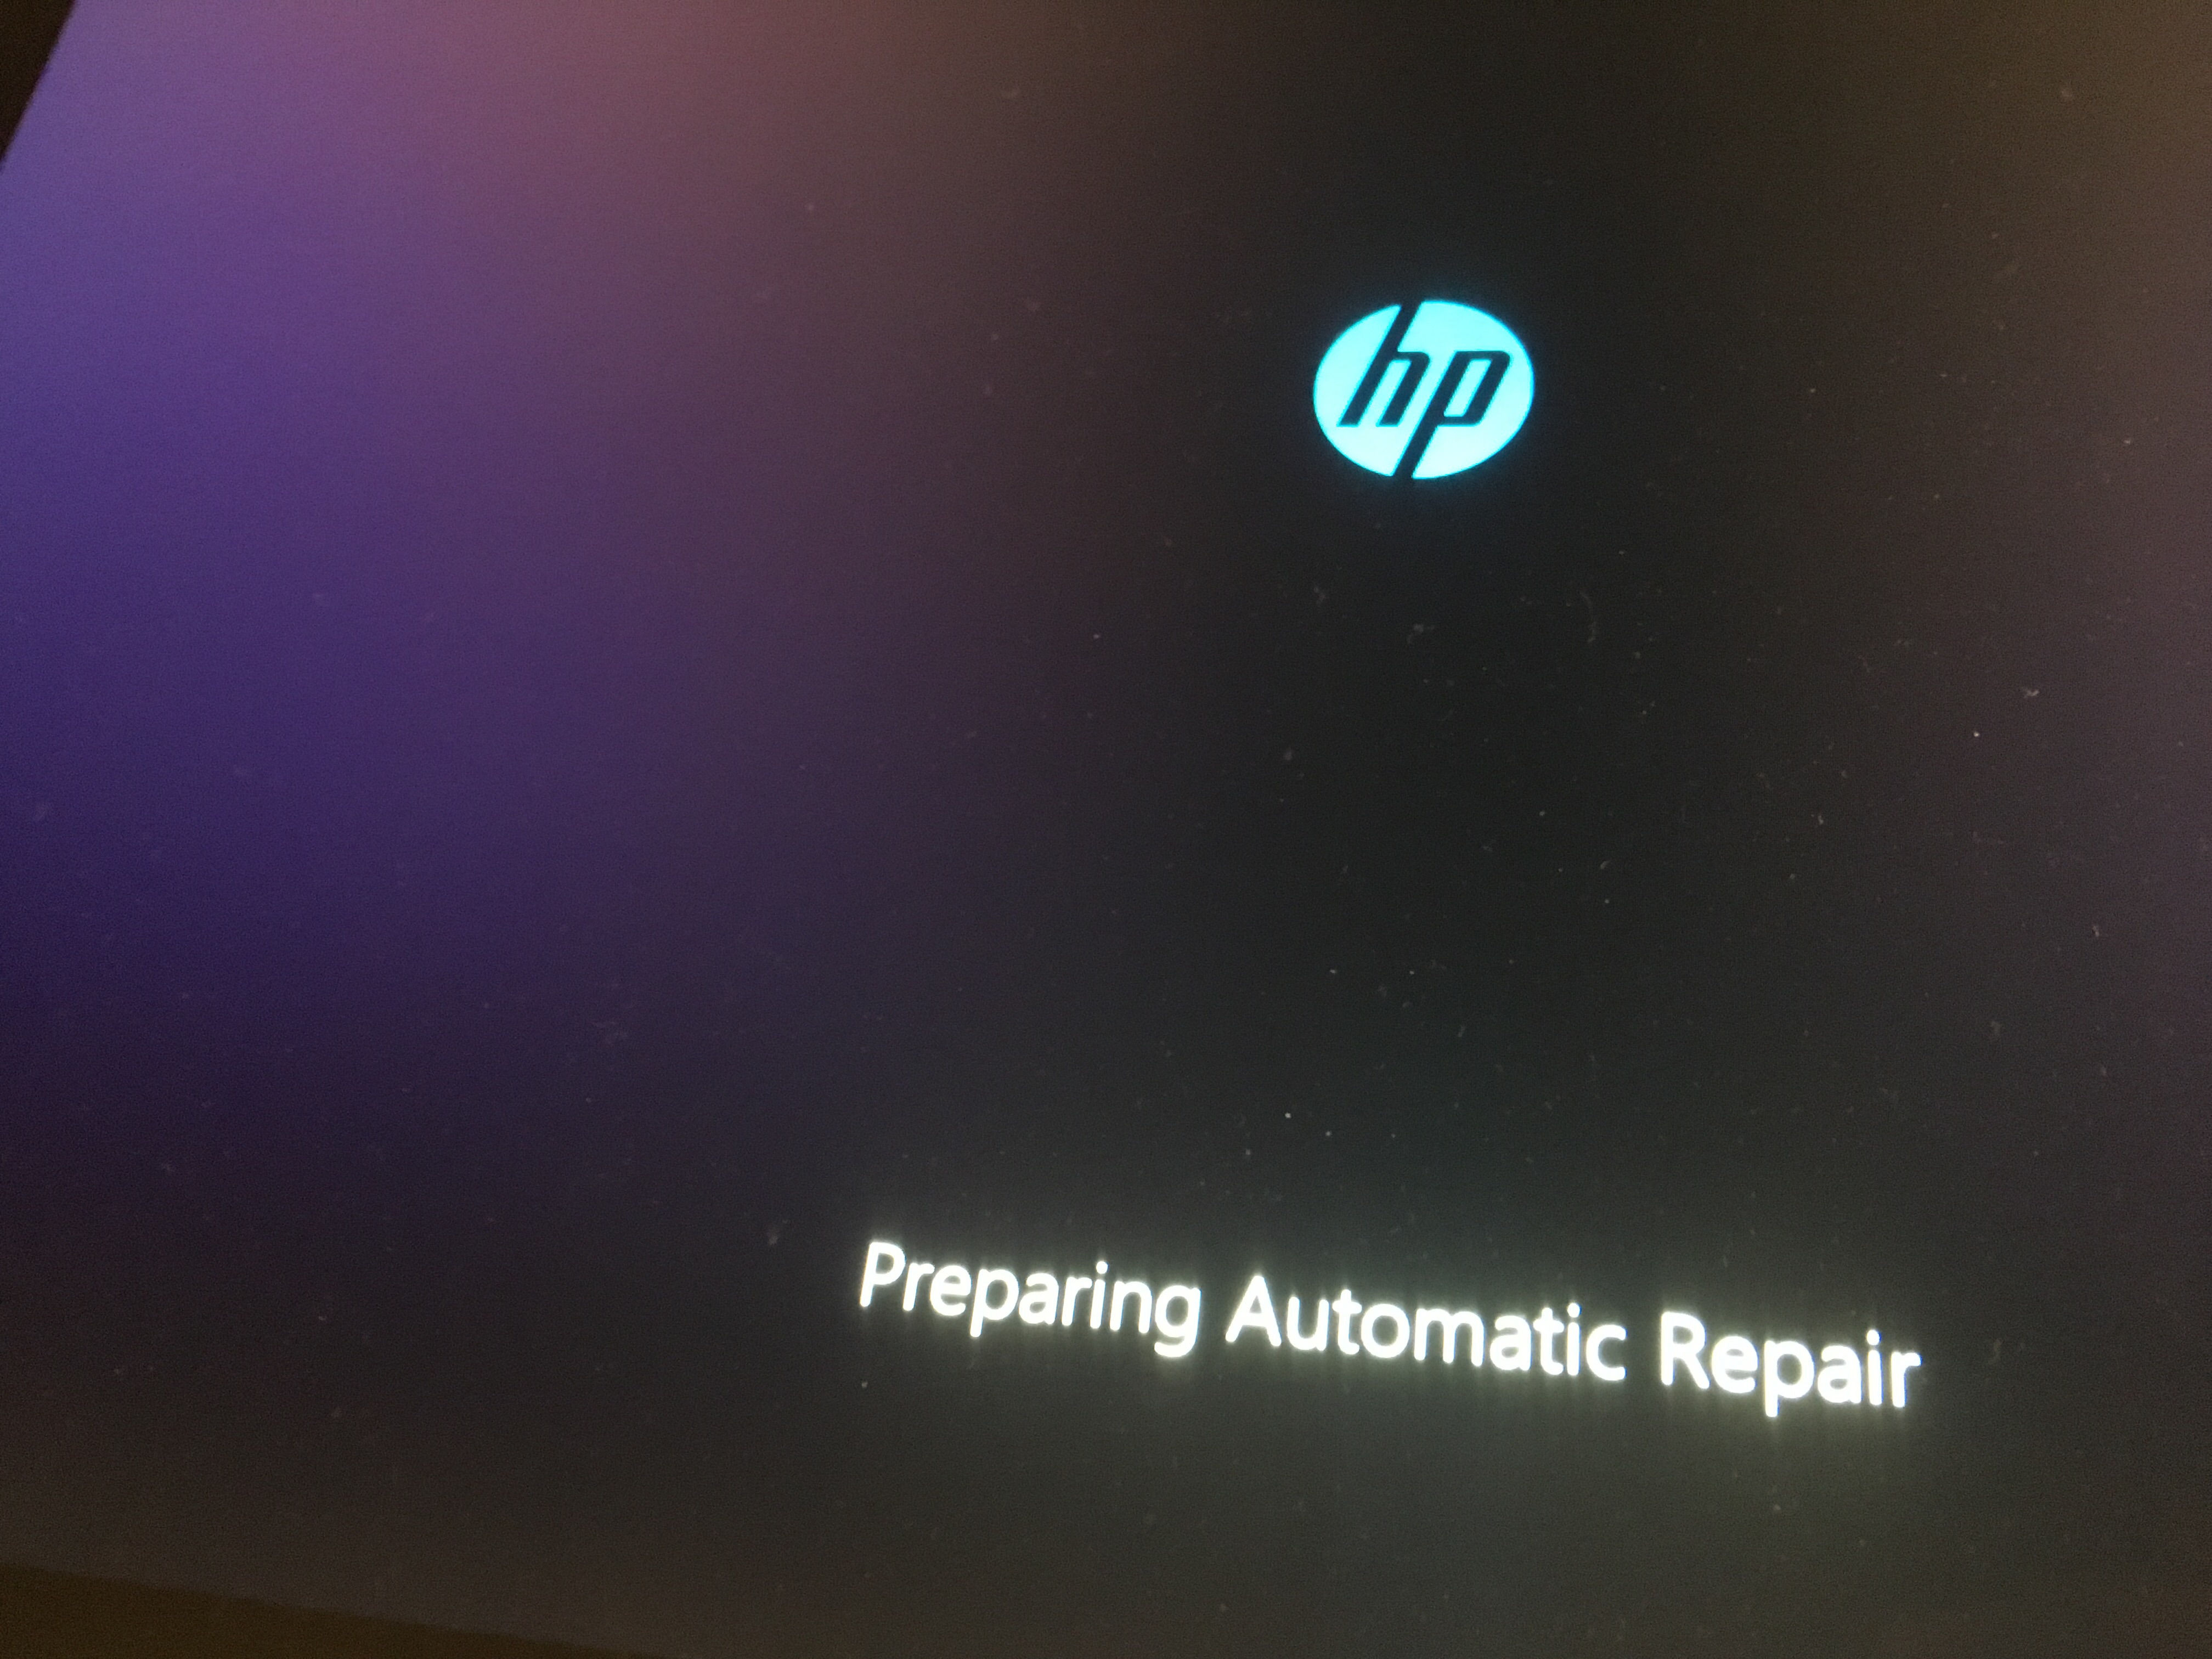 مشكلة عدم اقلاع نسخة ويندوز 10 شاشة سوداء Preparing Automatic